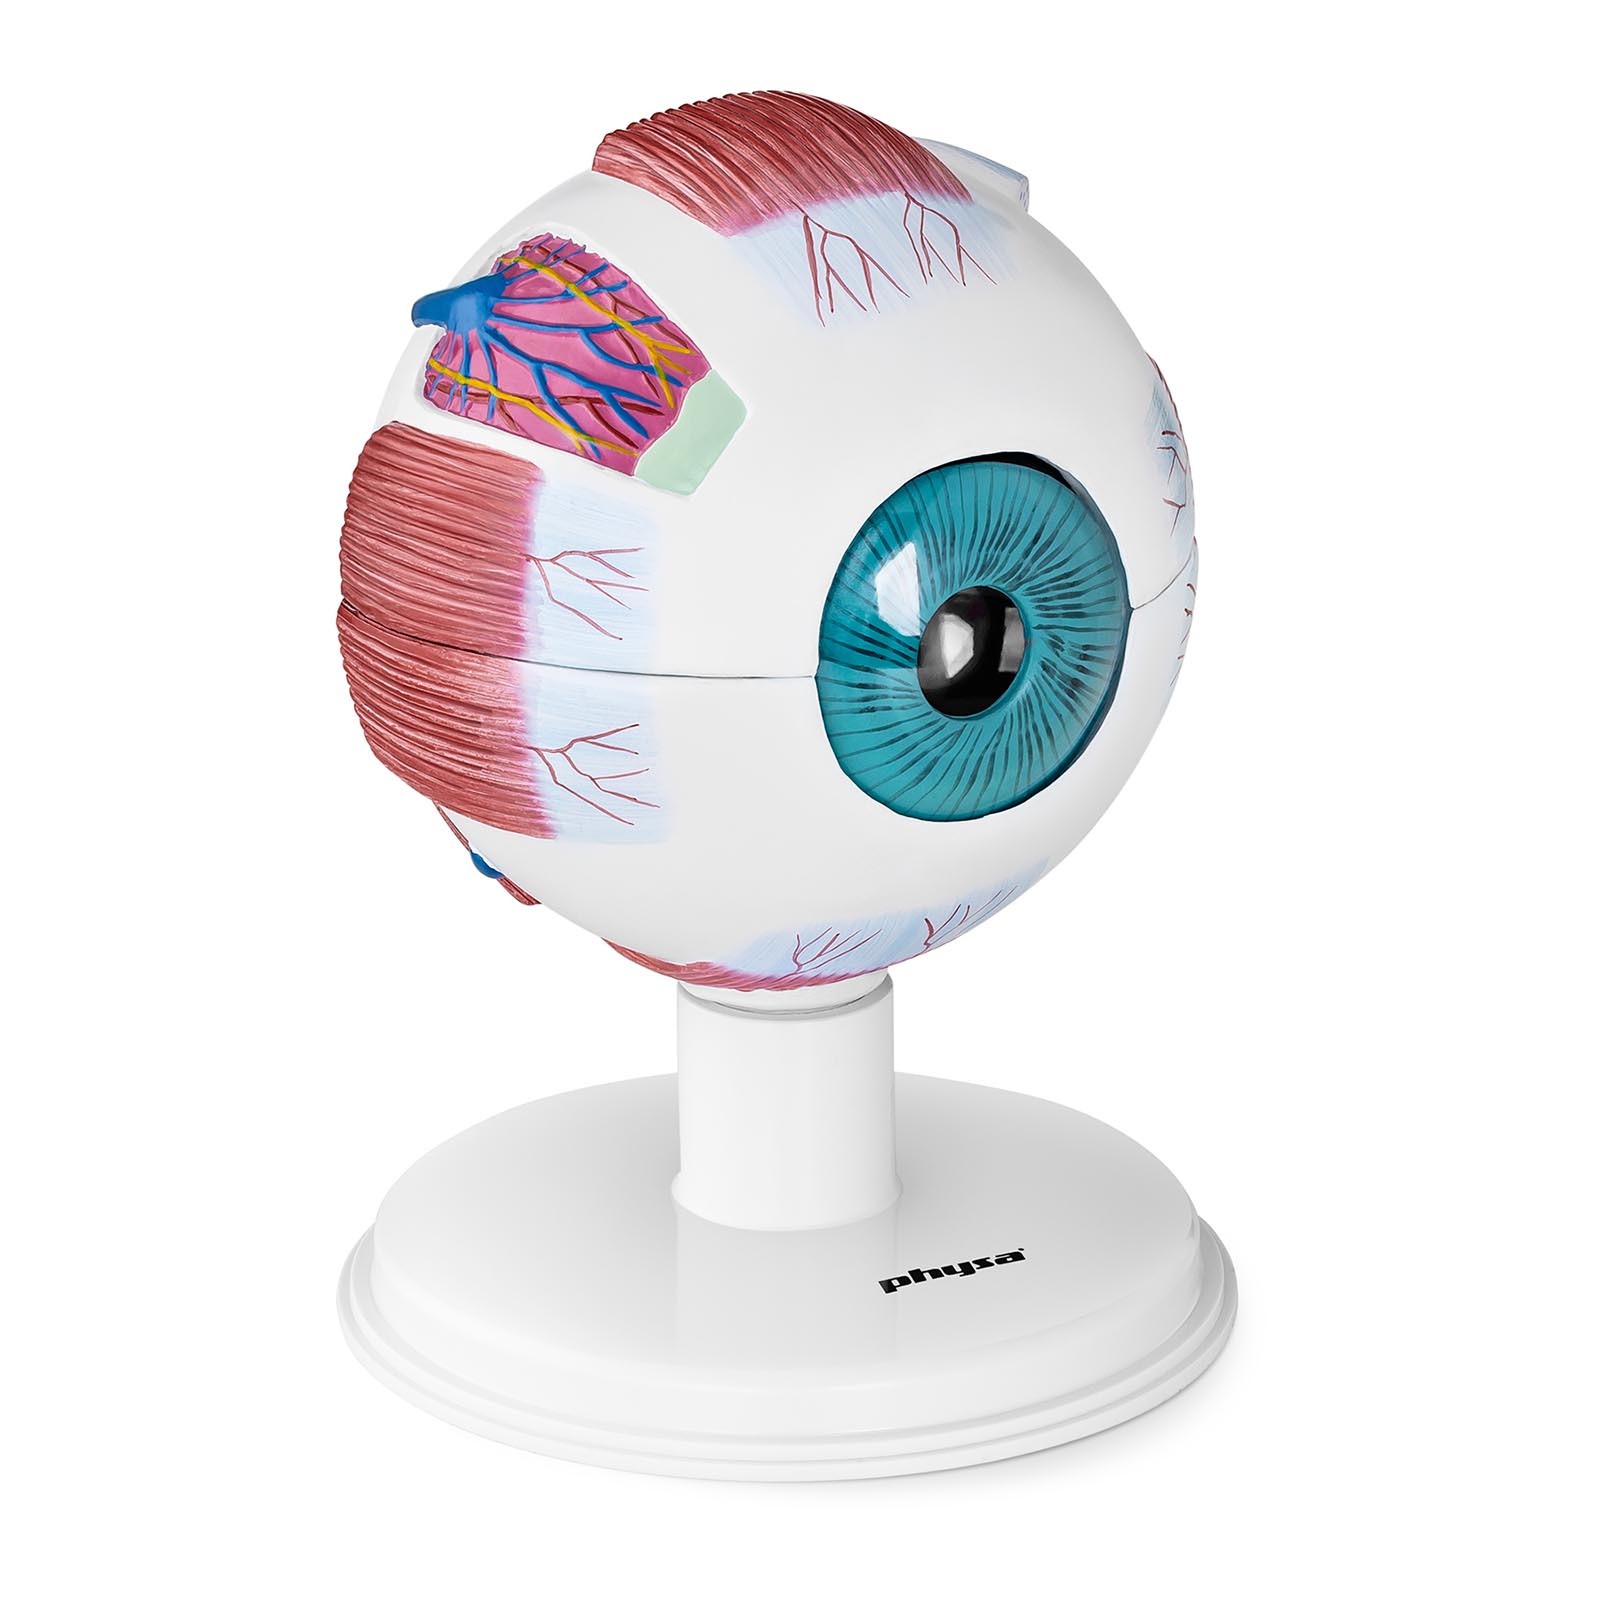 Modello anatomico occhio - 6:1